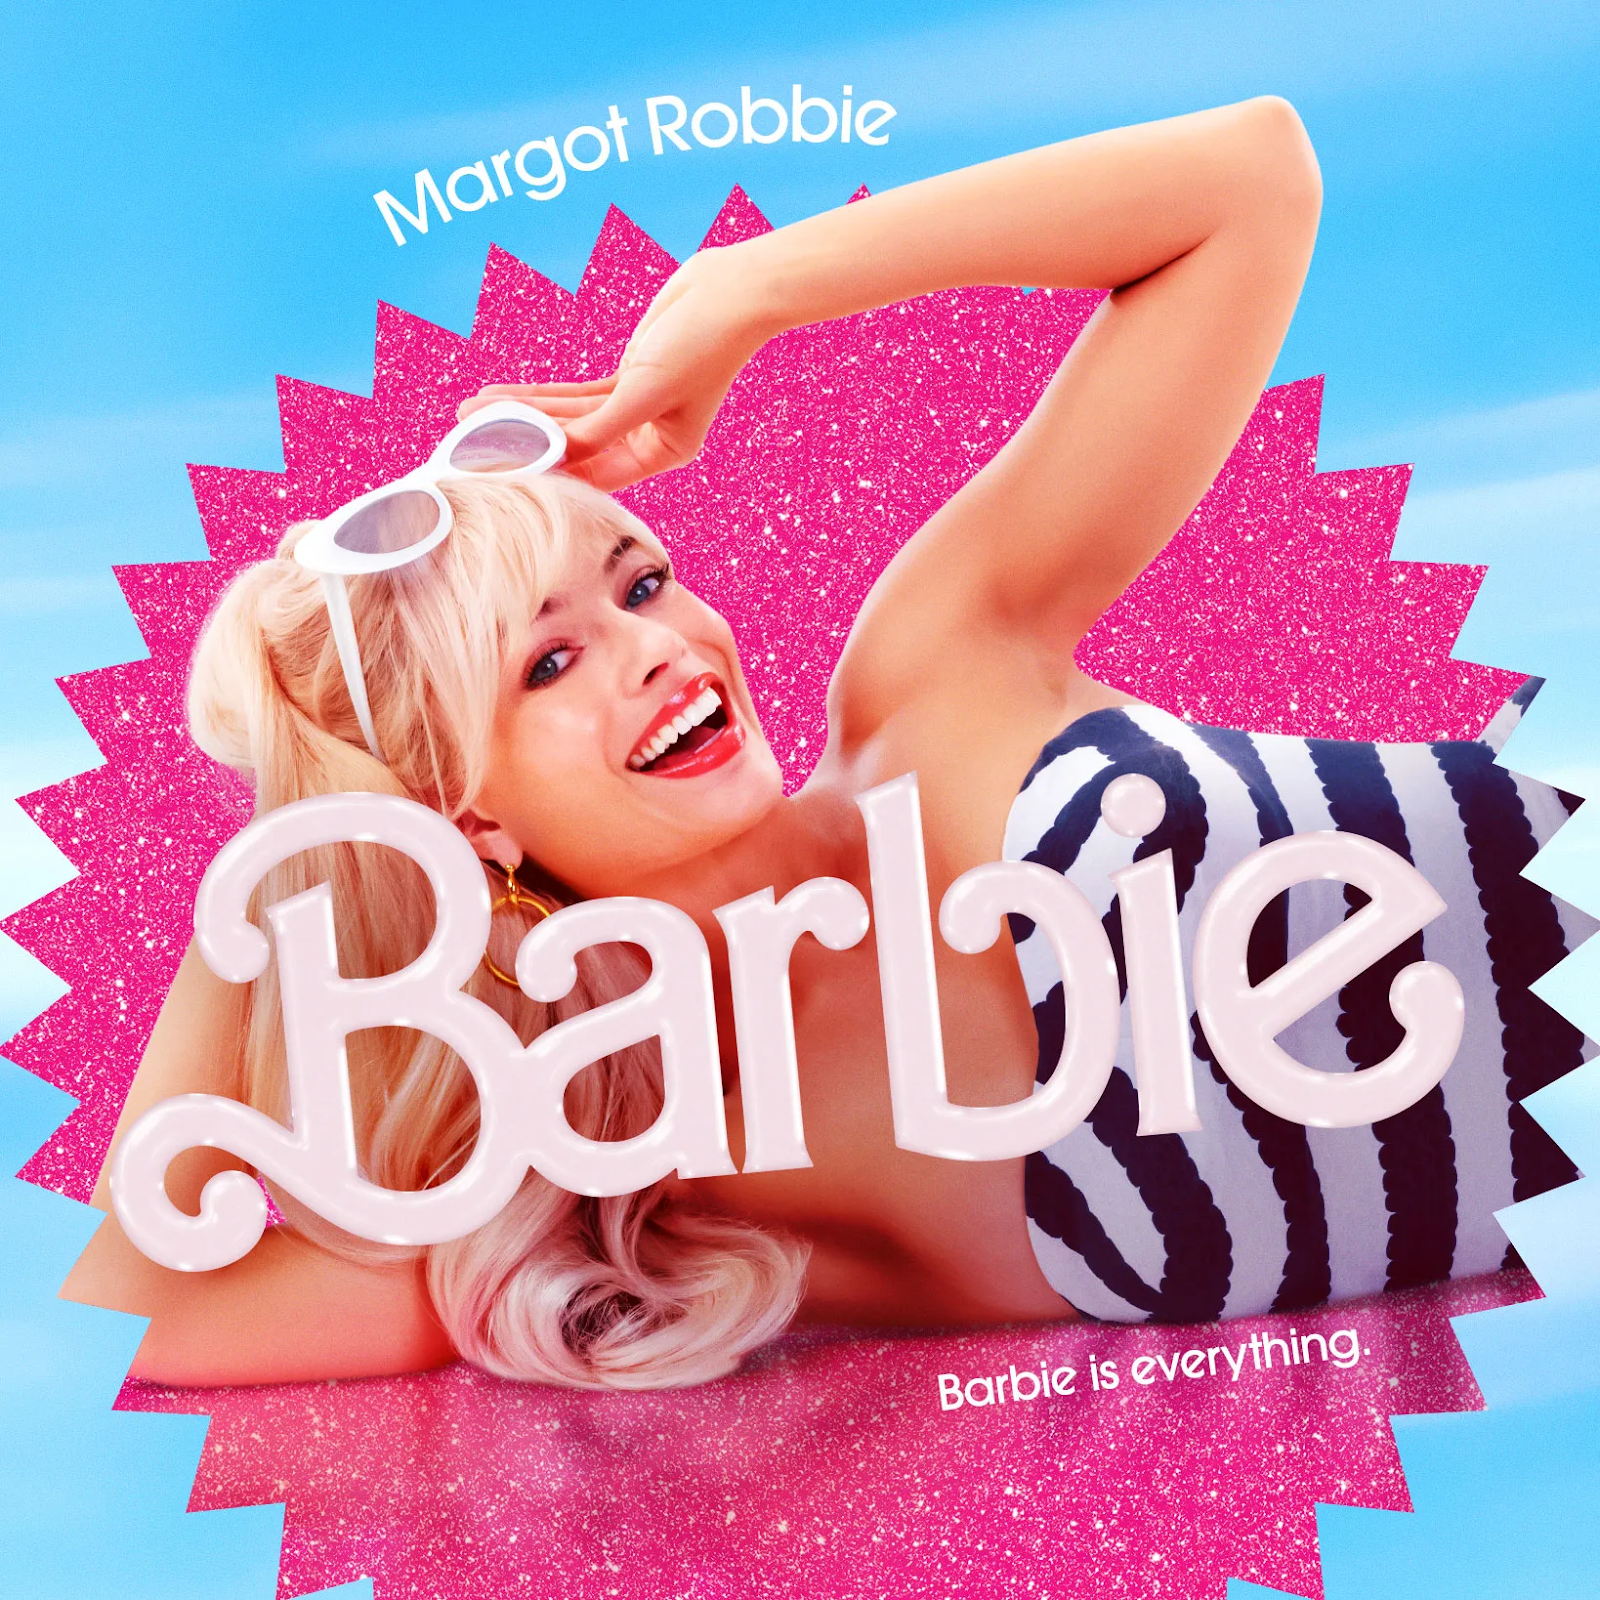 Muito deboche e boas atuações marcam o novo filme da Barbie